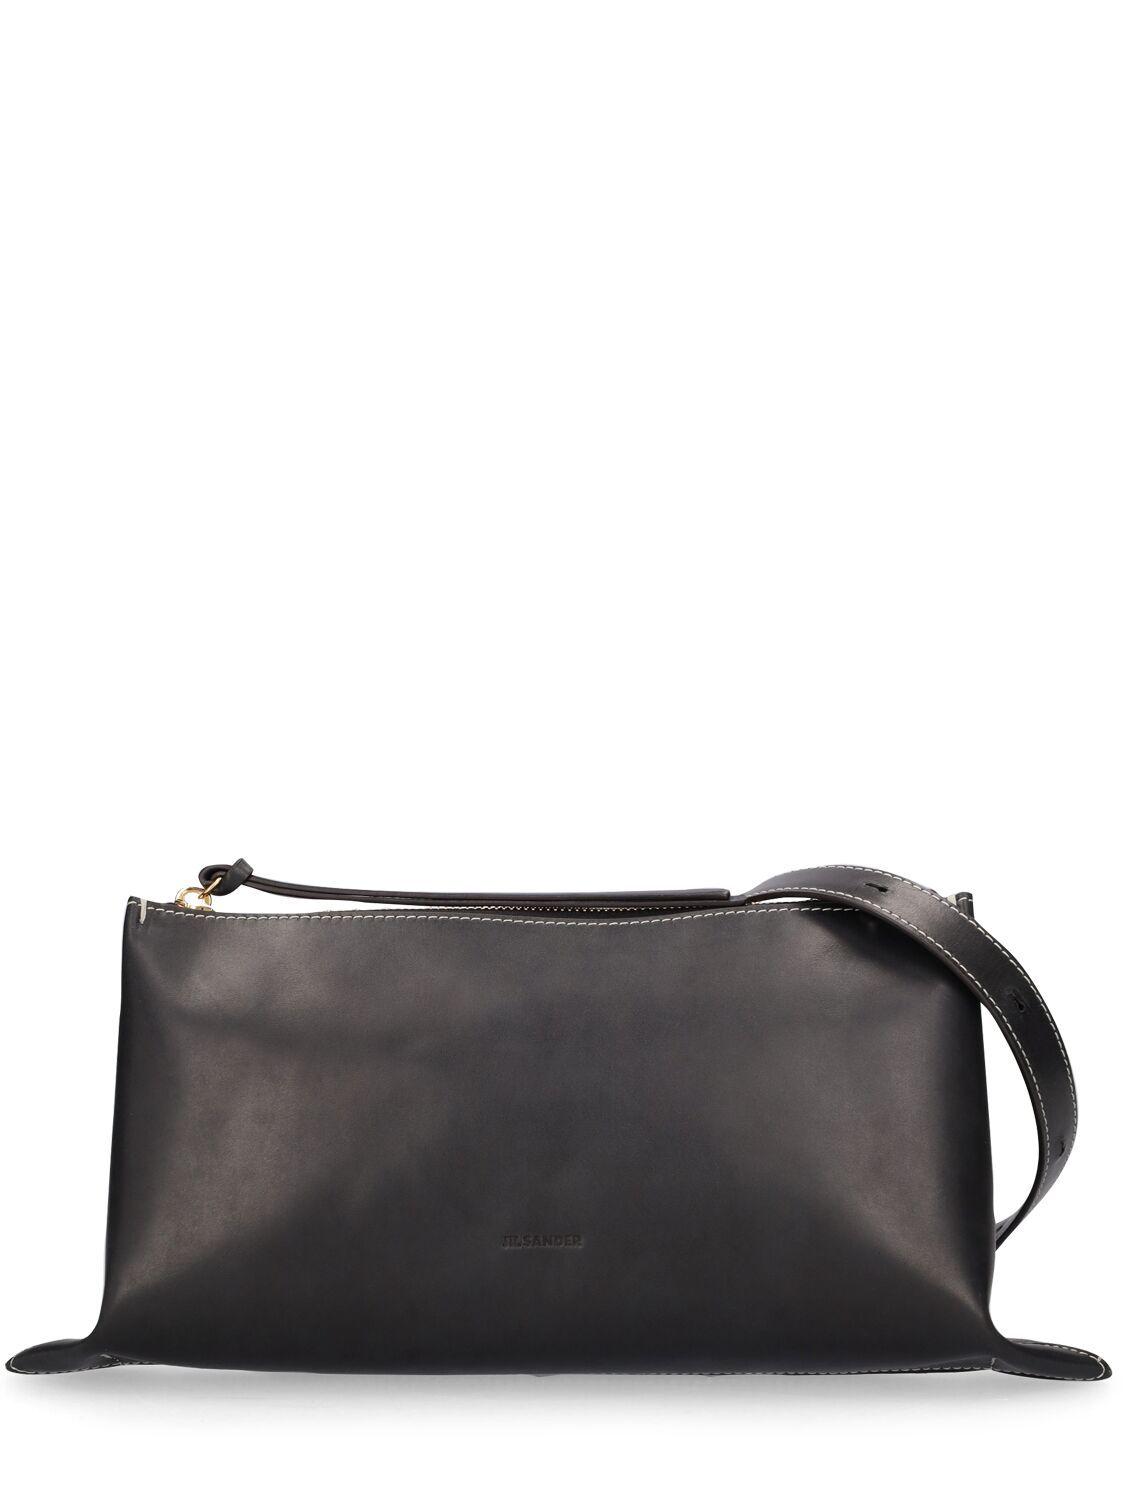 Jil Sander Small Empire Leather Shoulder Bag in Black | Lyst